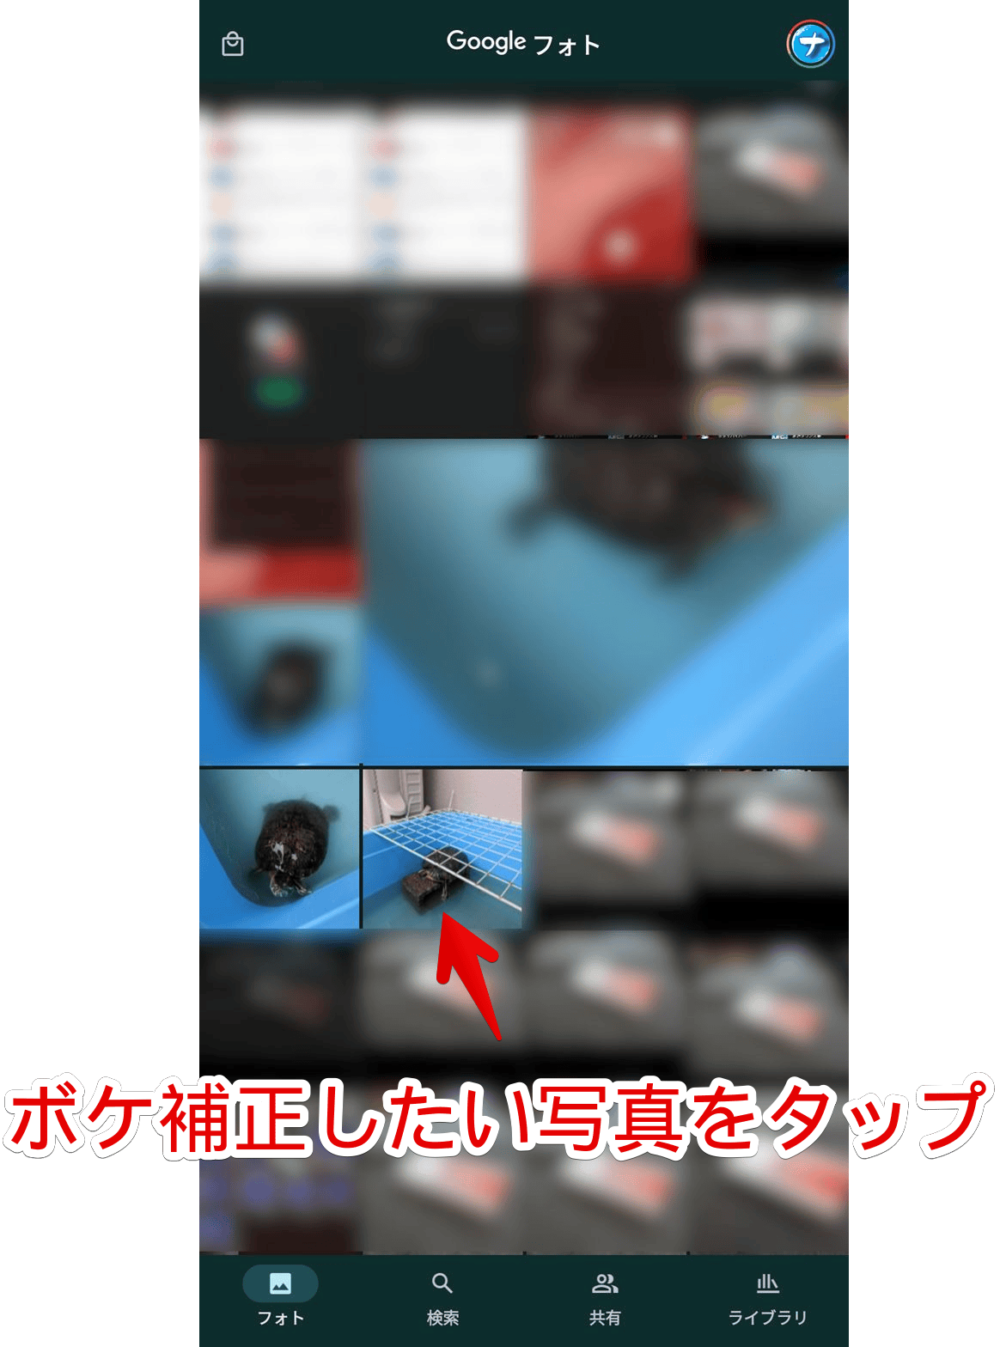 「Google Pixel 7a」のボケ補正を利用する手順画像2